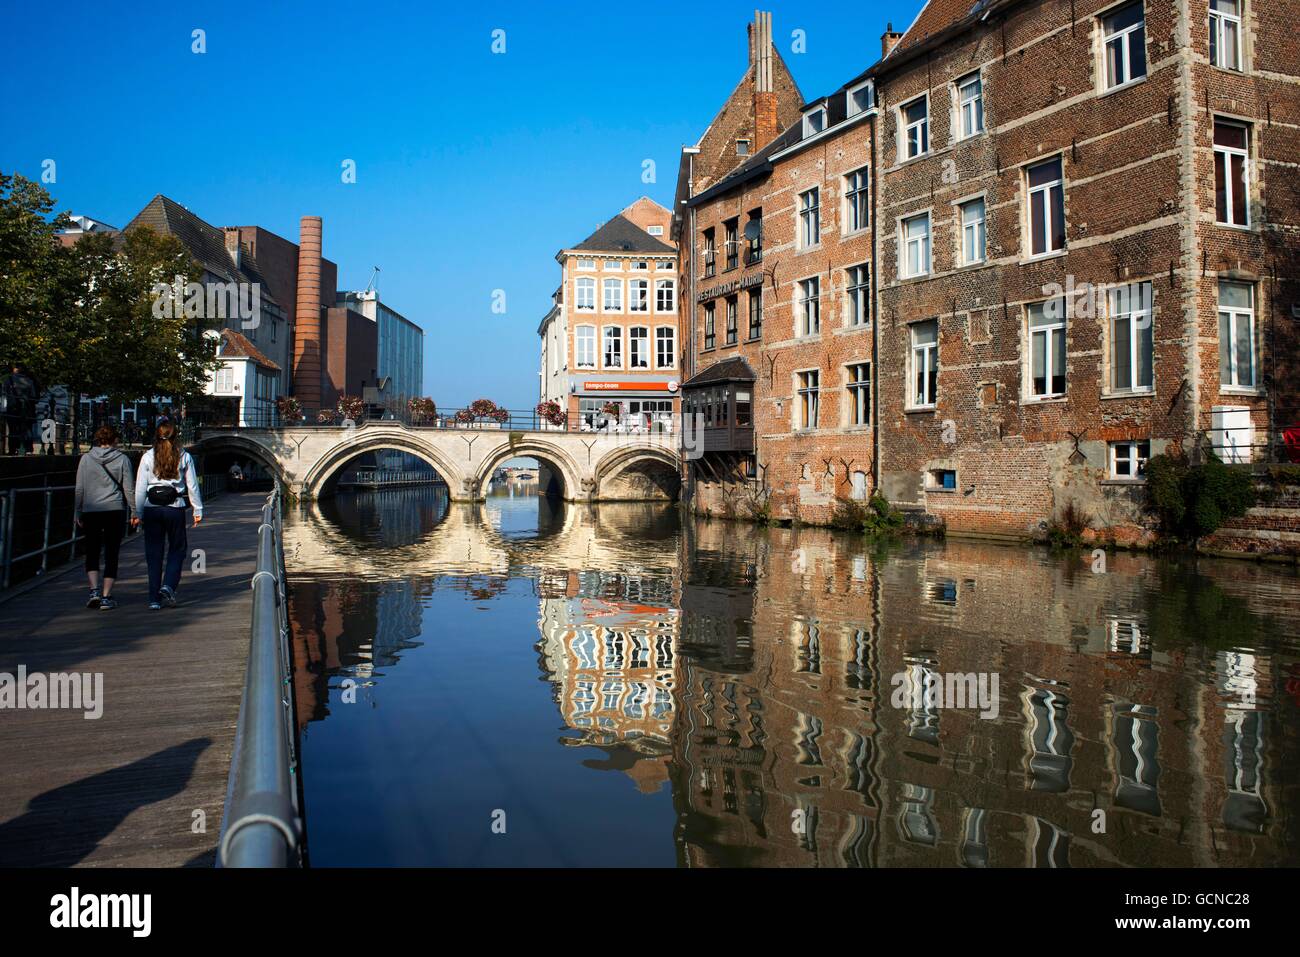 Mechelen Belgien flämische Haus Fassade außen Reisen Reiseziel Twillight Kanal Kanal Wasserstraße Ausflugsboot. Romantische ca Stockfoto